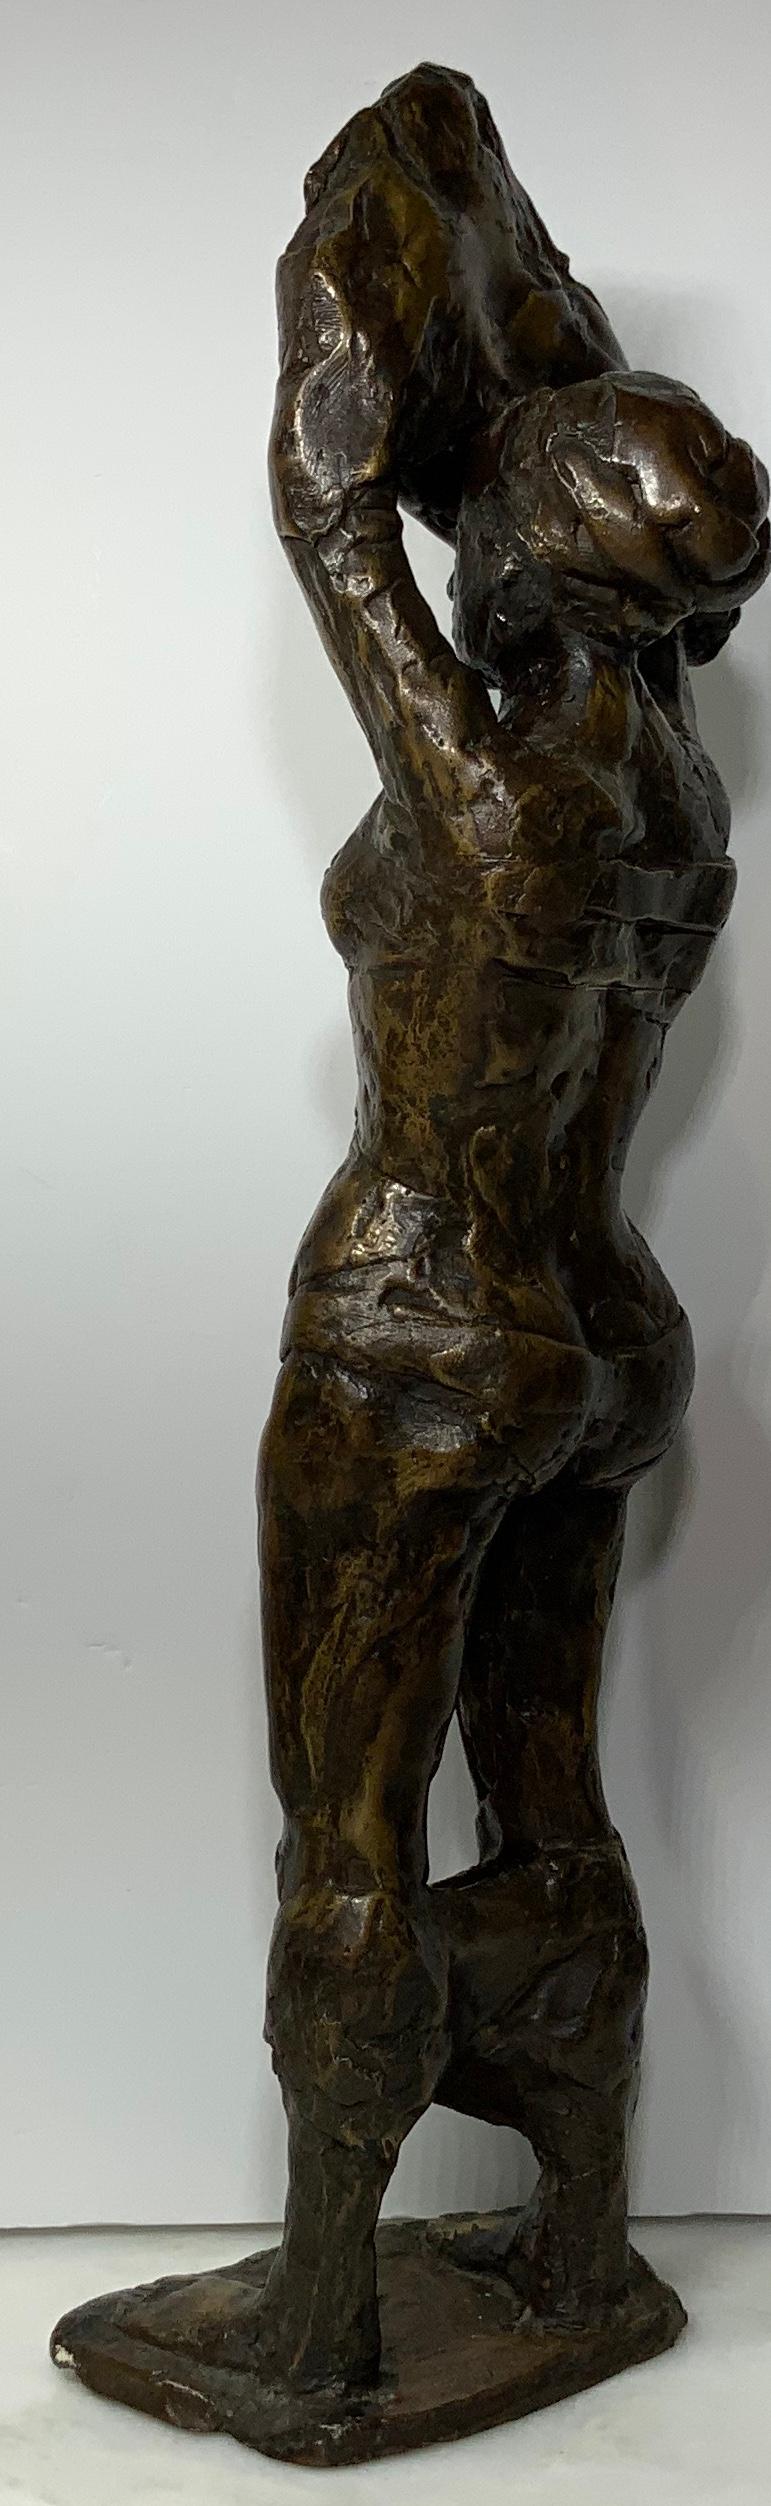 rodin sculpture woman